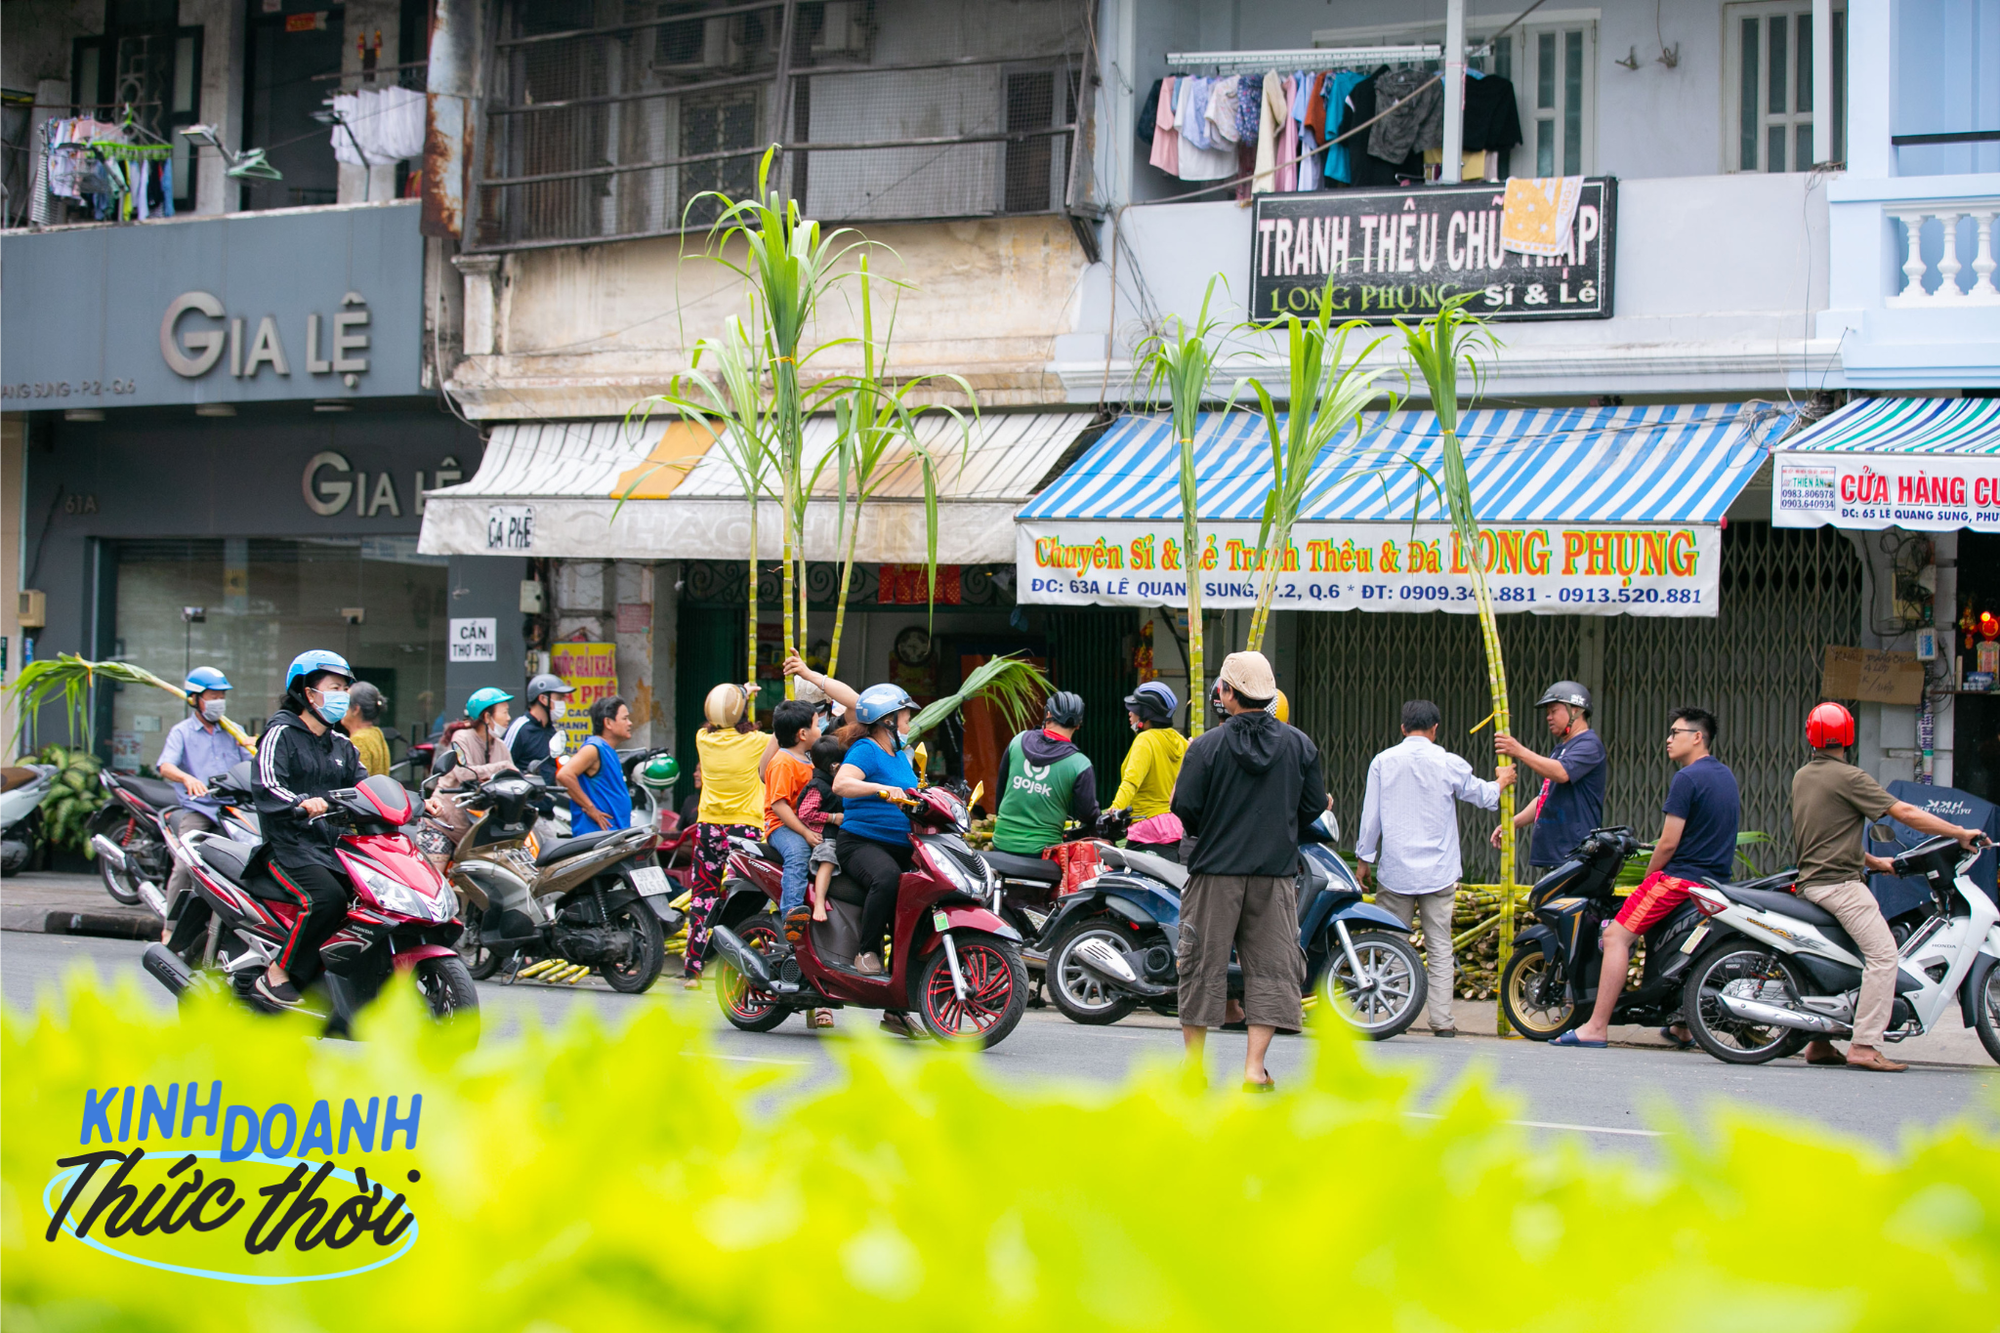 Kiếm hàng chục triệu chưa đầy 24 giờ nhờ phong tục mua mía vàng cúng vía Trời ở Sài Gòn - Ảnh 4.